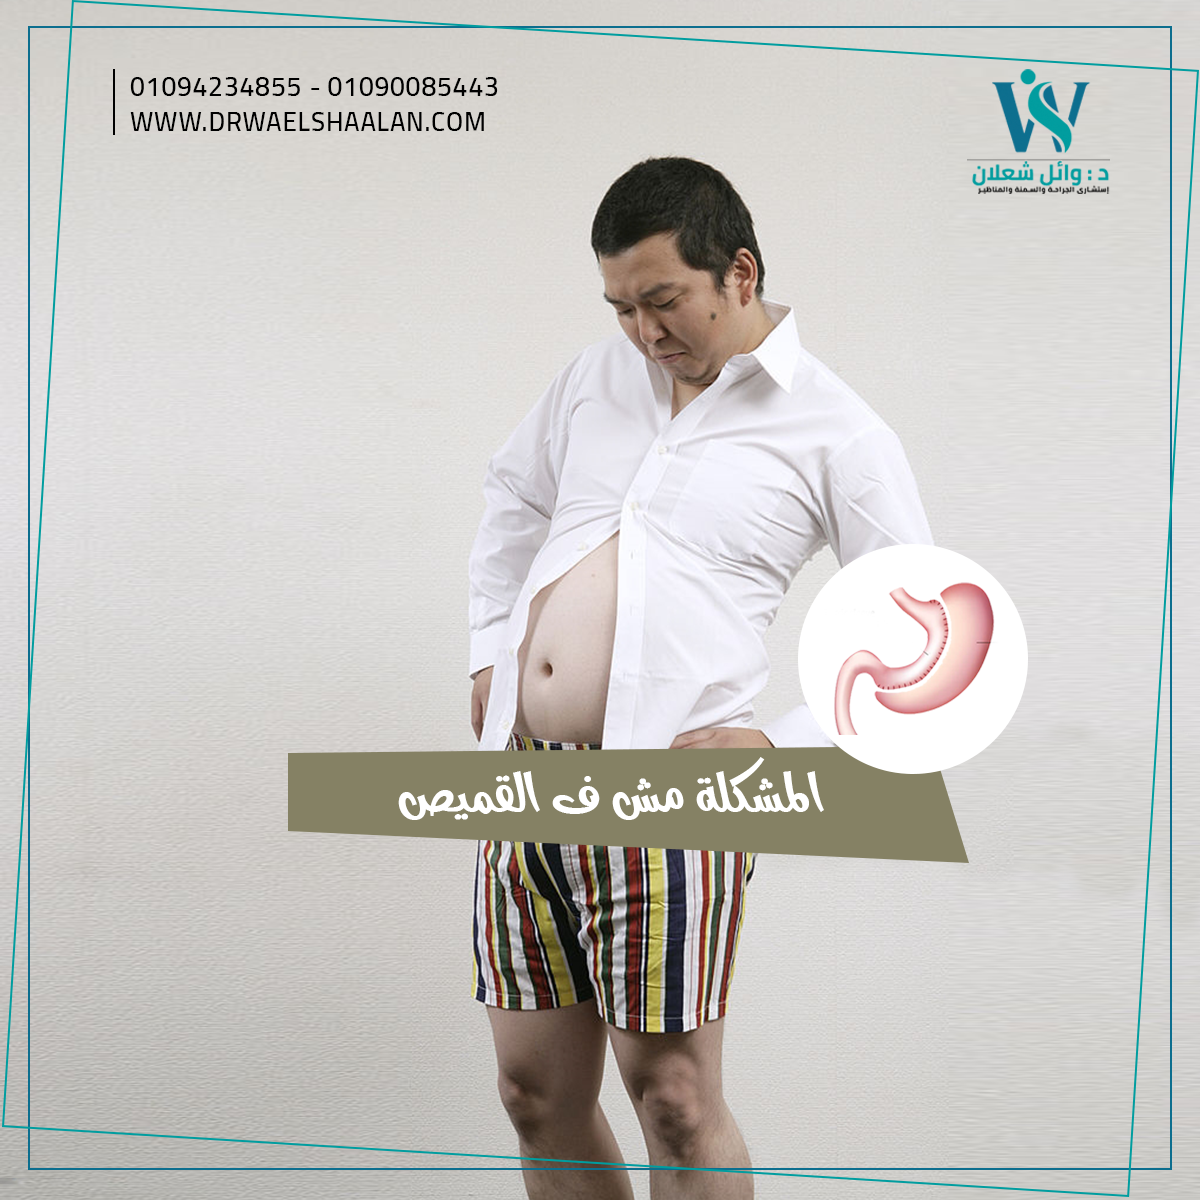 د / وائل شعلان social